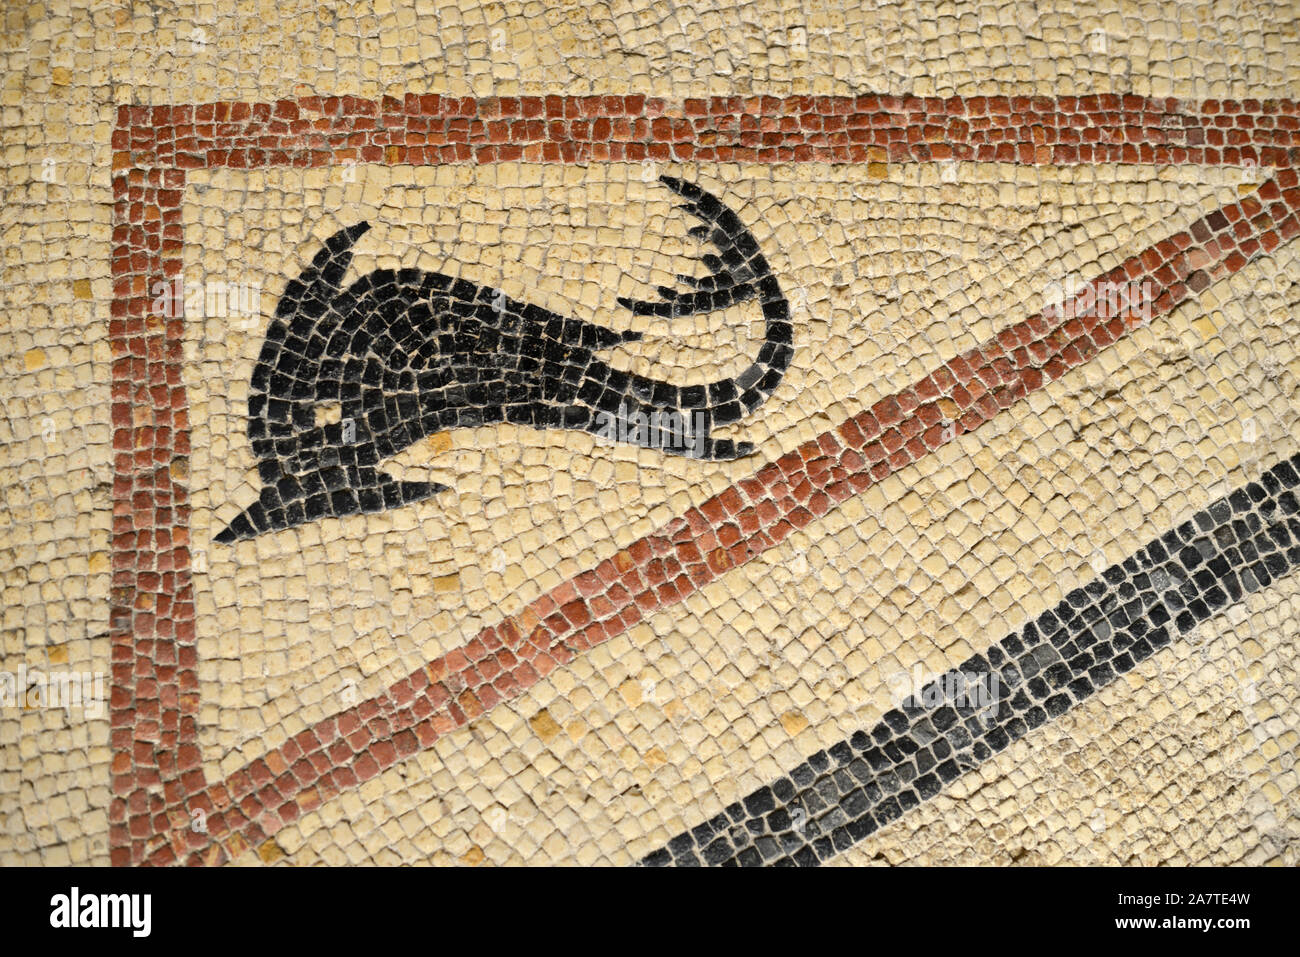 Mosaïque romaine de baleines ou de dauphins comme créature de mer 1ère-2ème ANNONCE de la rue Pasteur Nimes (Musée de la Romanité) Banque D'Images